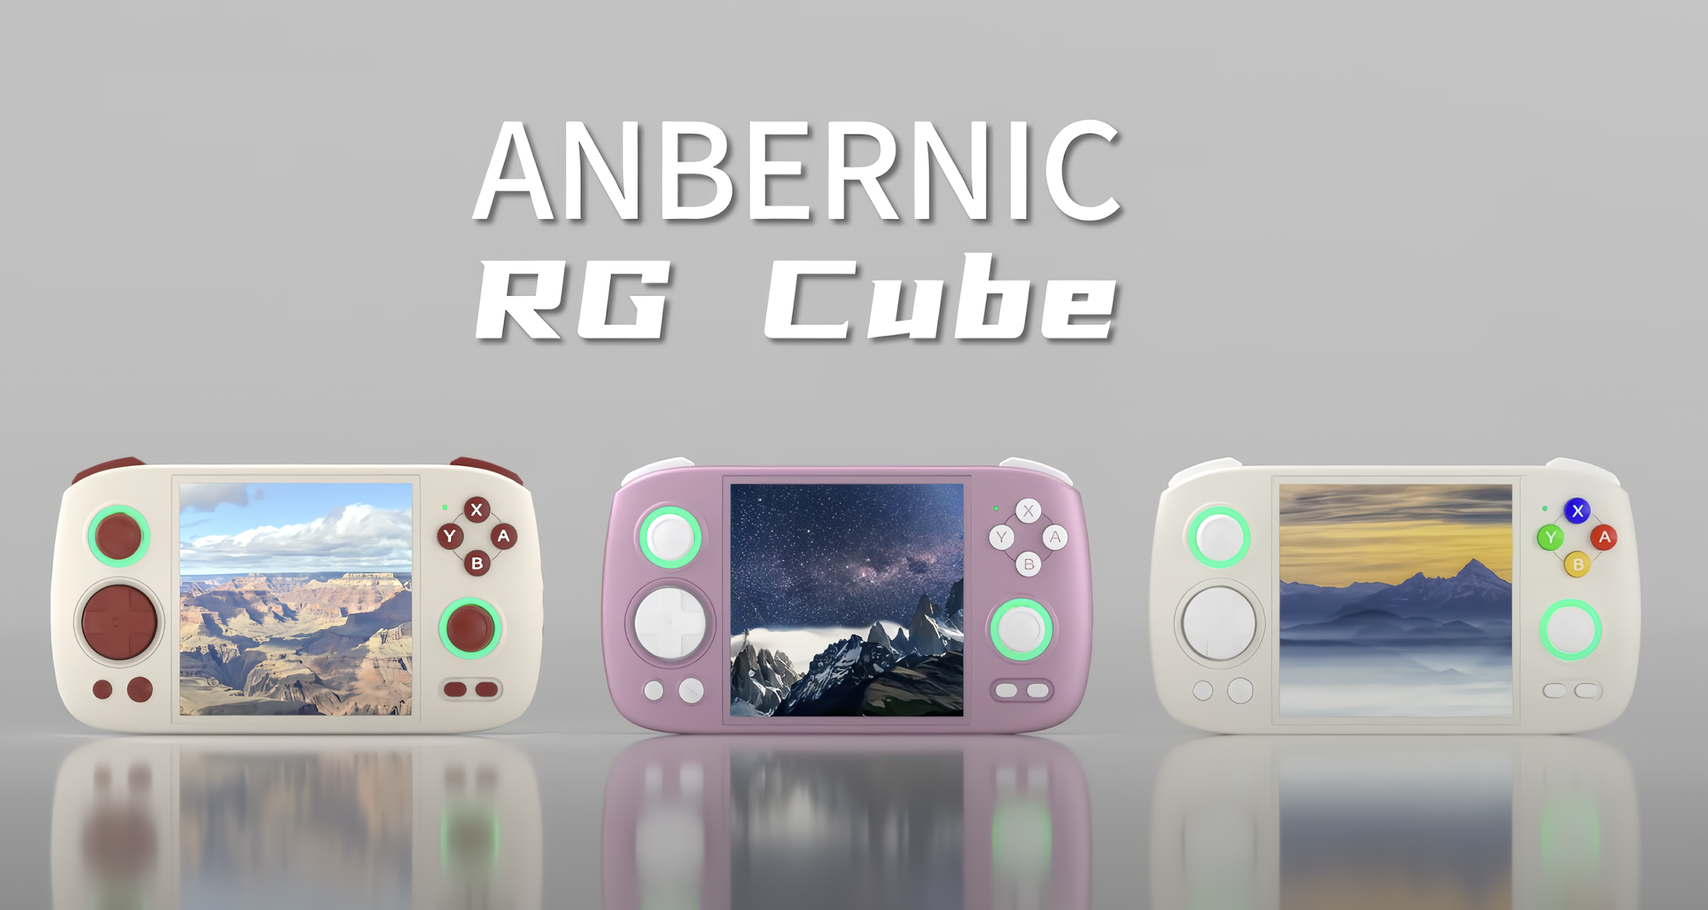 Spelkonsolen Anbernic RG Cube för retrospelsentusiaster har presenterats